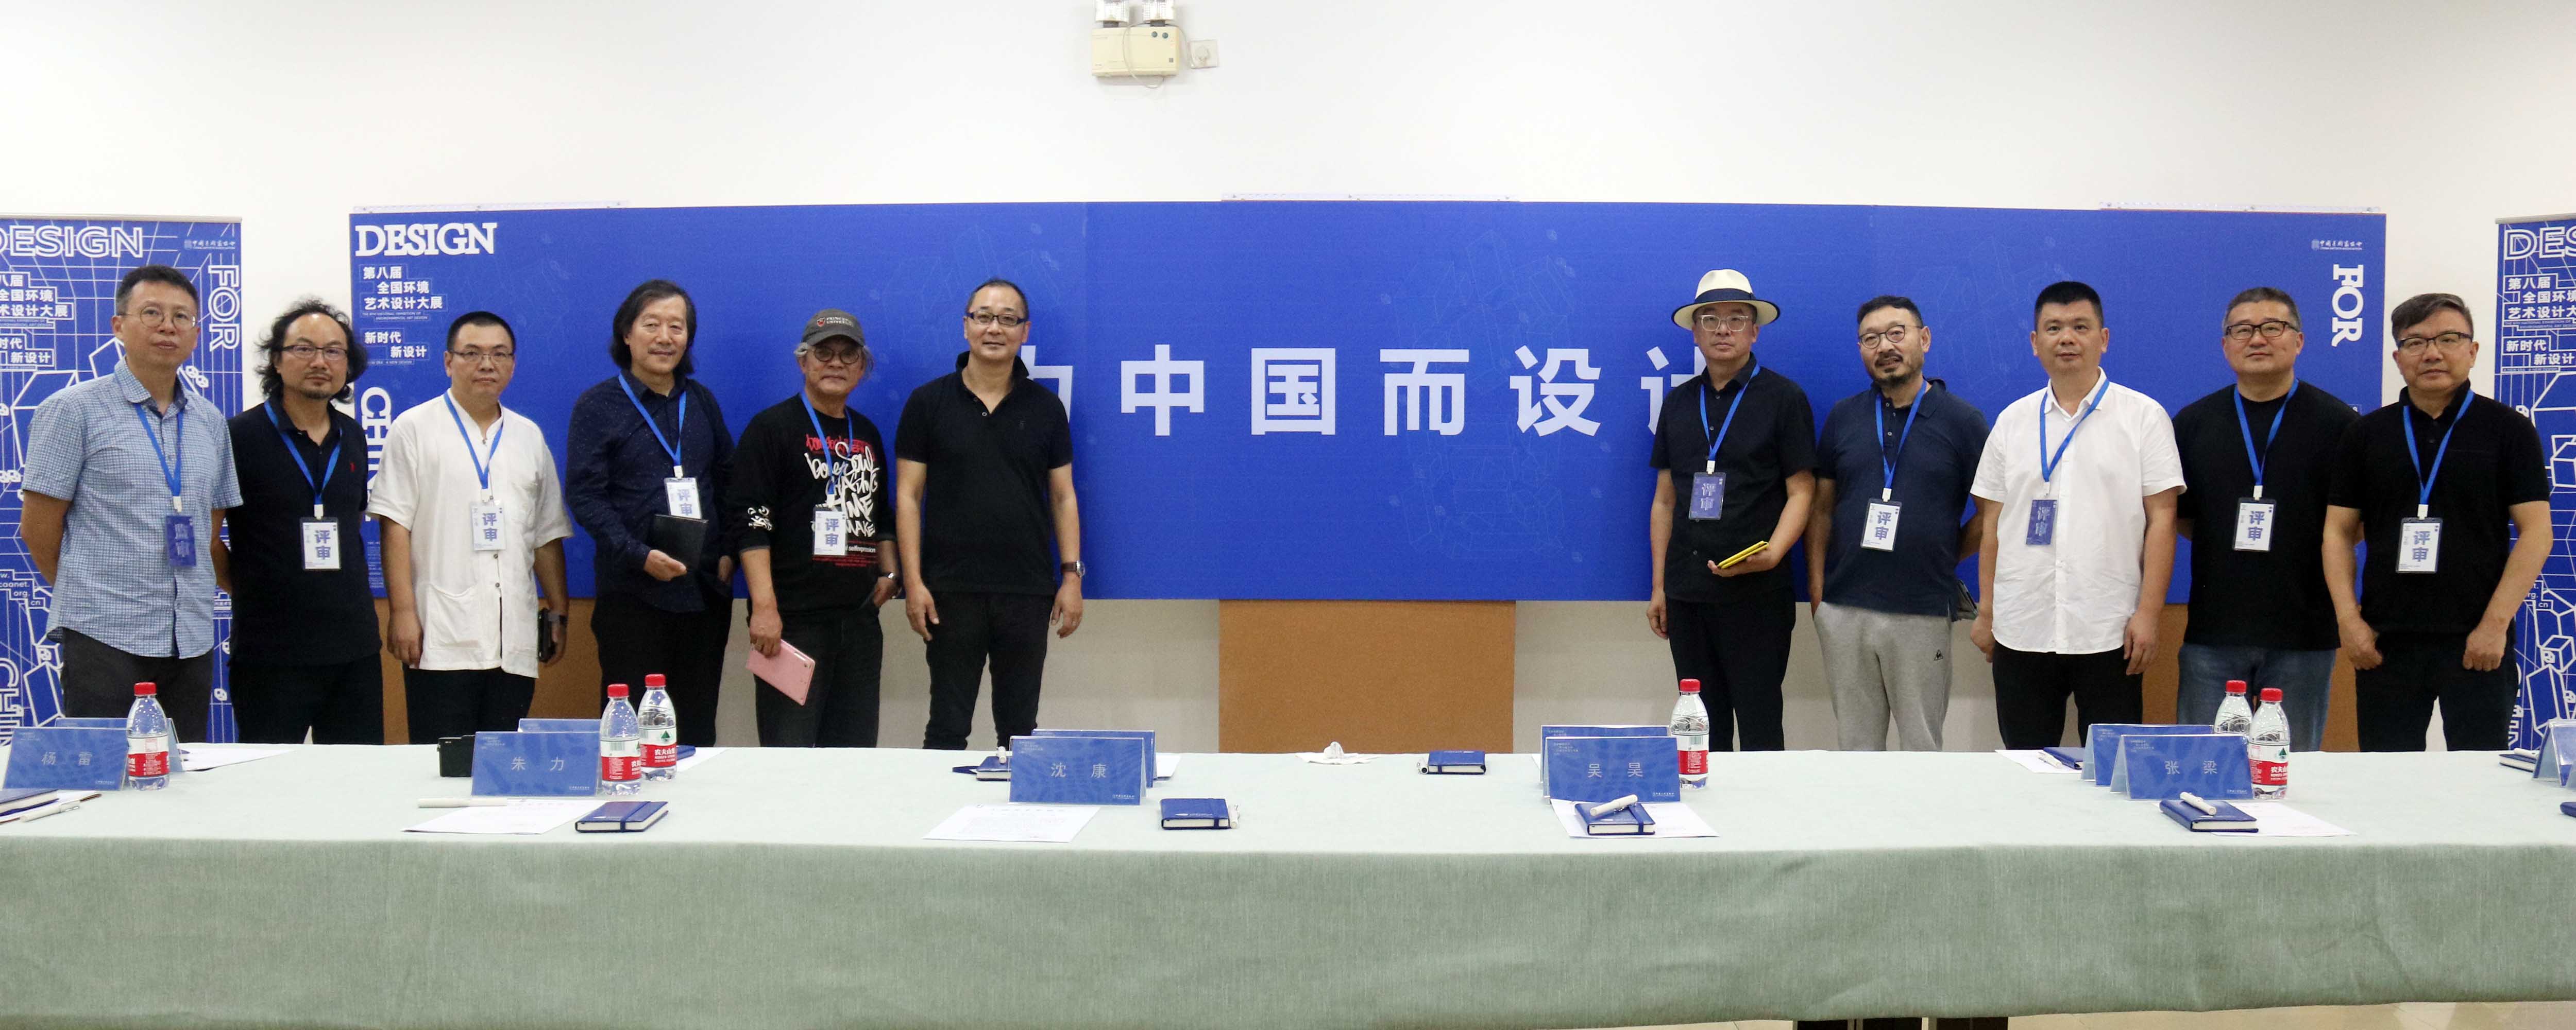 第八届全国环境艺术设计大展评审工作会在广州举办